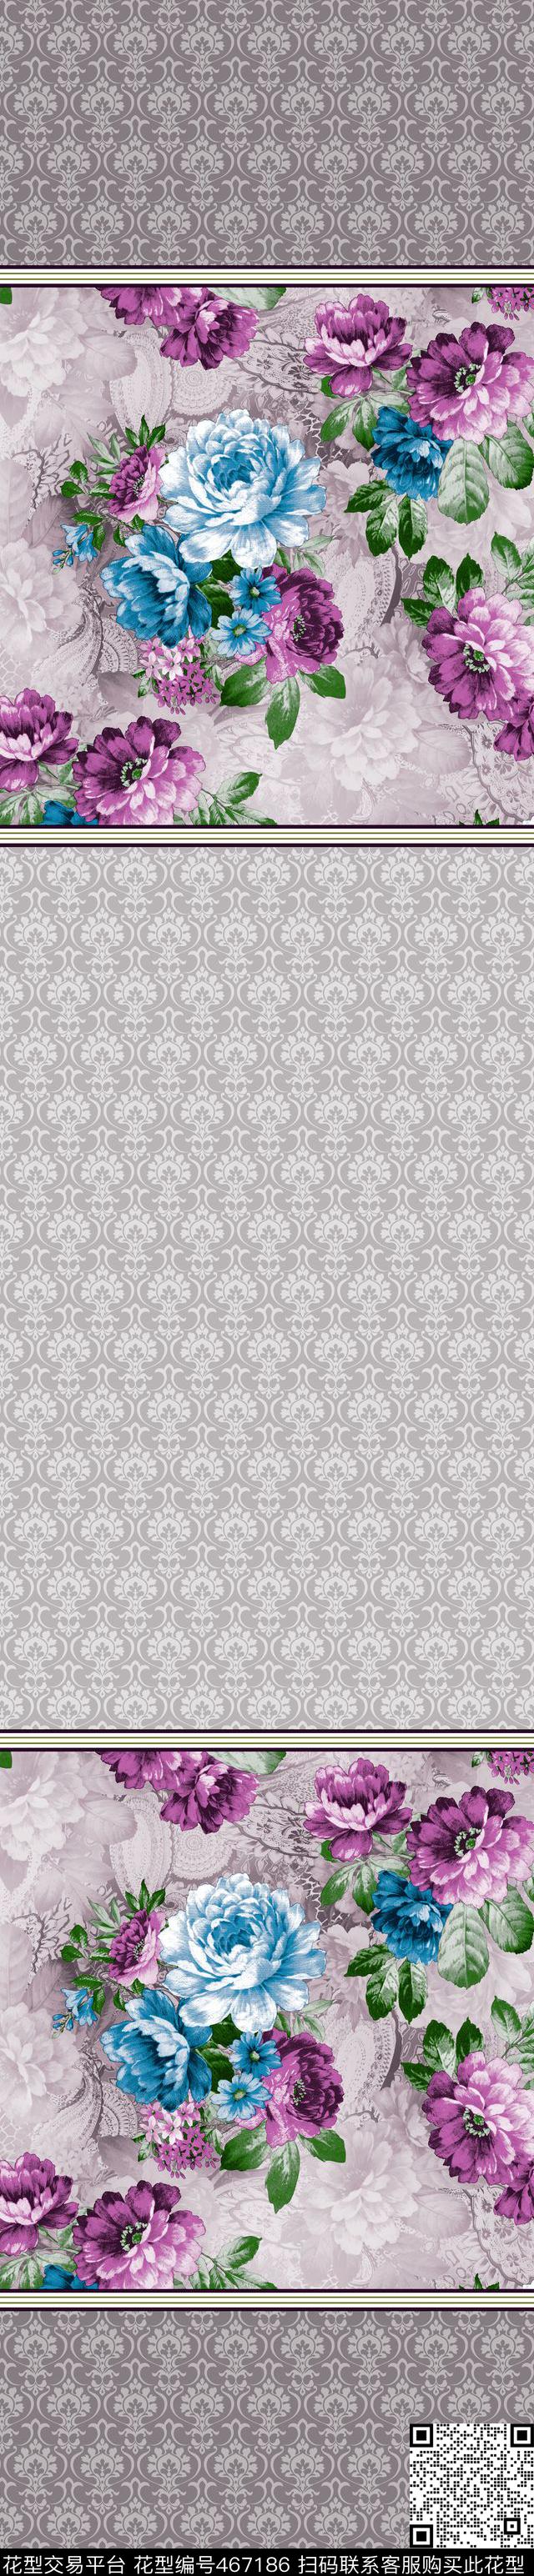 时尚窗帘花型 家纺花型 流行窗帘花型 - 467186 - 时尚窗帘花型 家纺花型 流行窗帘花型 - 传统印花花型 － 窗帘花型设计 － 瓦栏